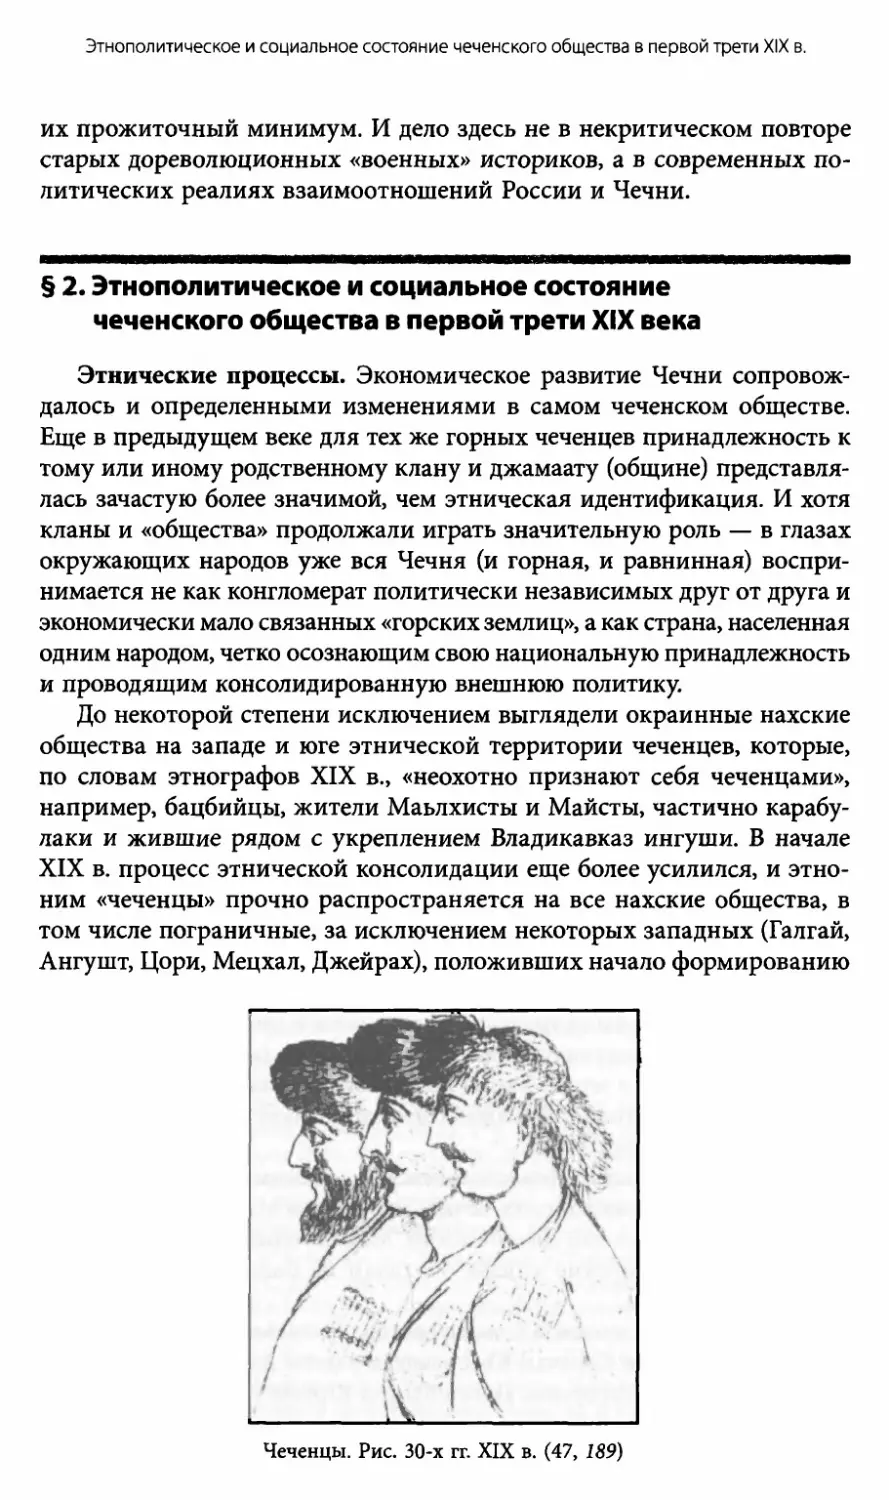 § 2. Этнополитическое и социальное состояние чеченского общества в первой трети XIX века